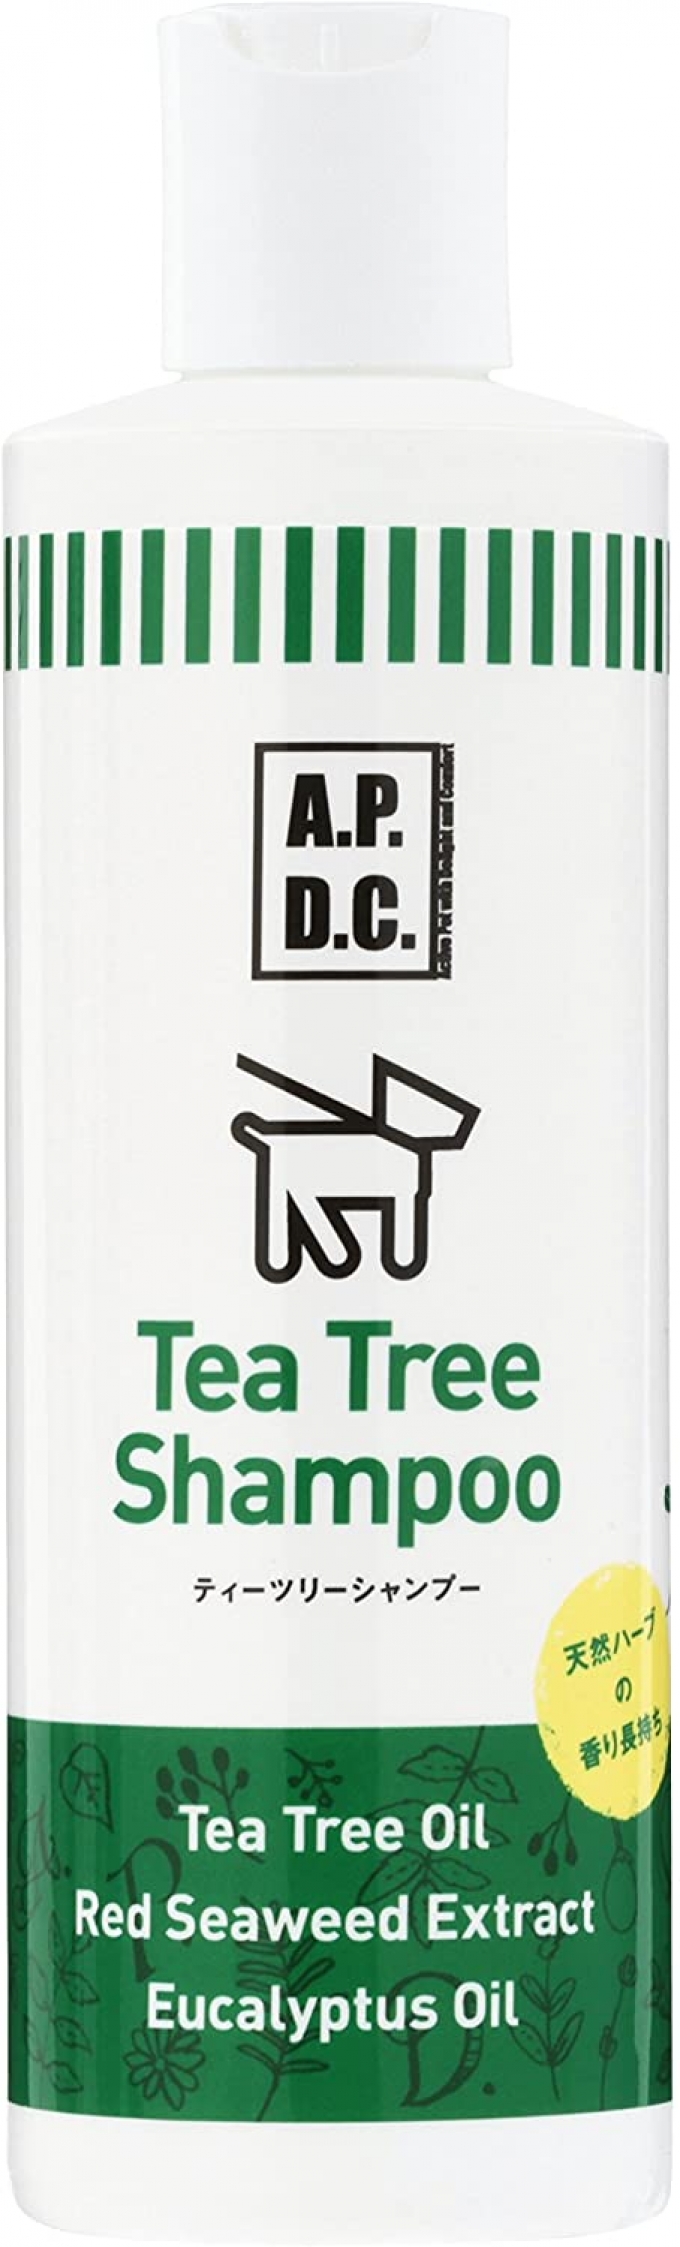 APDC Tea Tree Shampoo 250ml